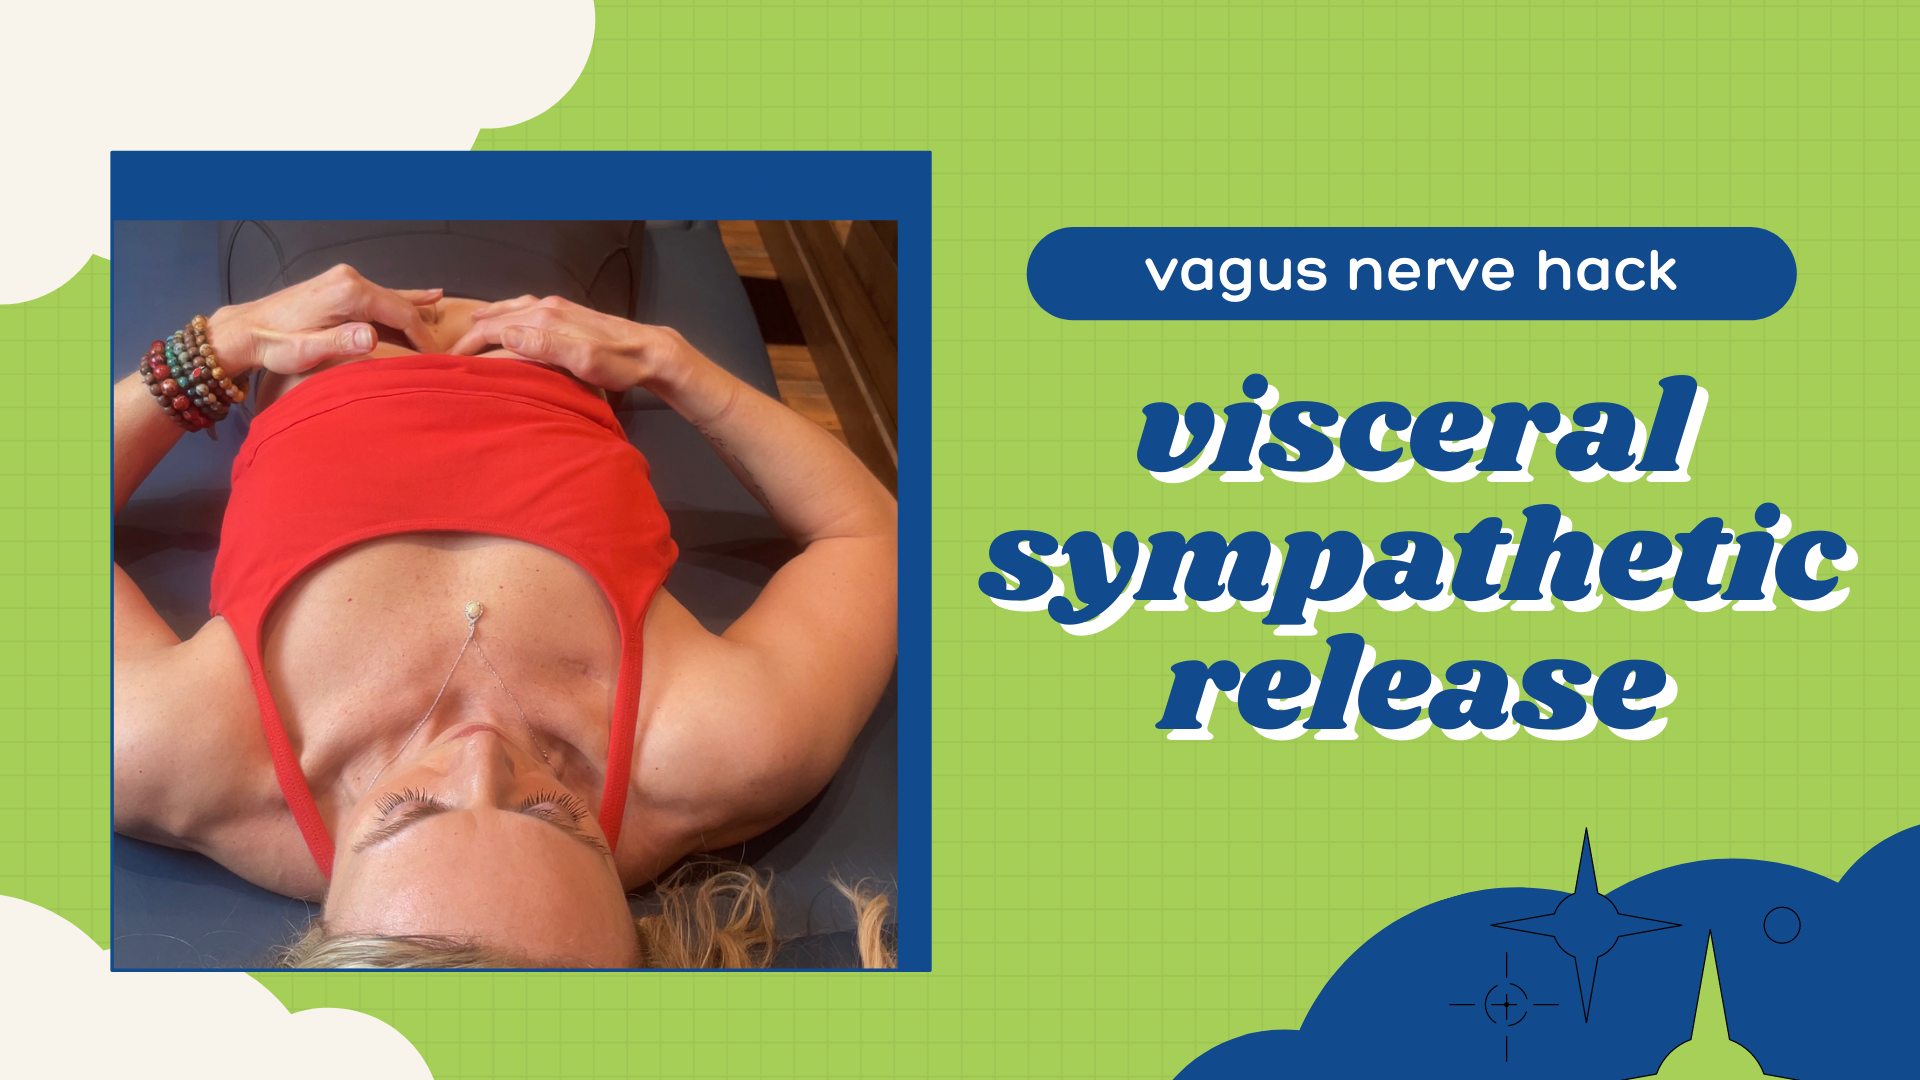 Vagus nerve hack: visceral sympathetic release | celiac plexus, superior/inferior mesenteric plexus￼￼